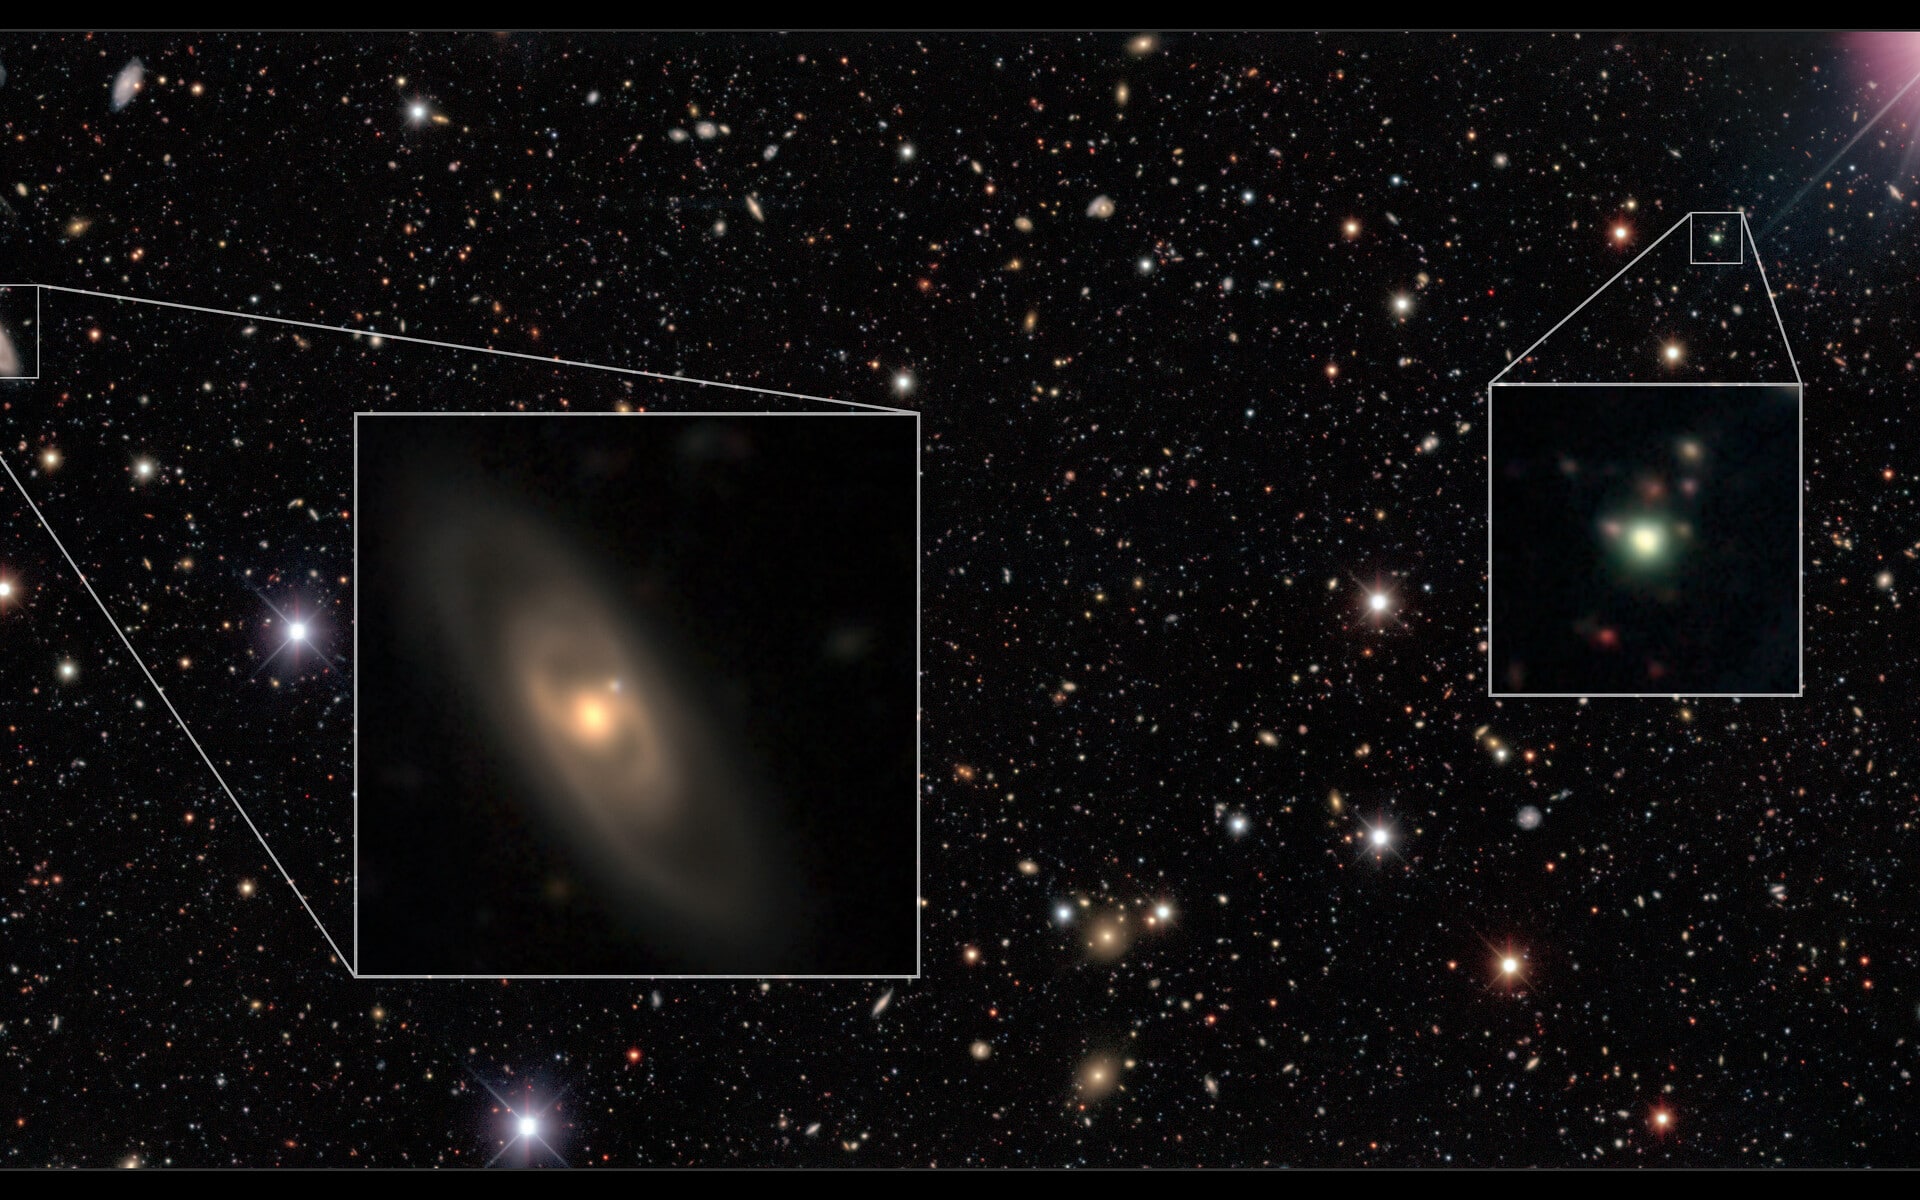 Dark Energy Camera Deep Image with Quasar (no annotations)